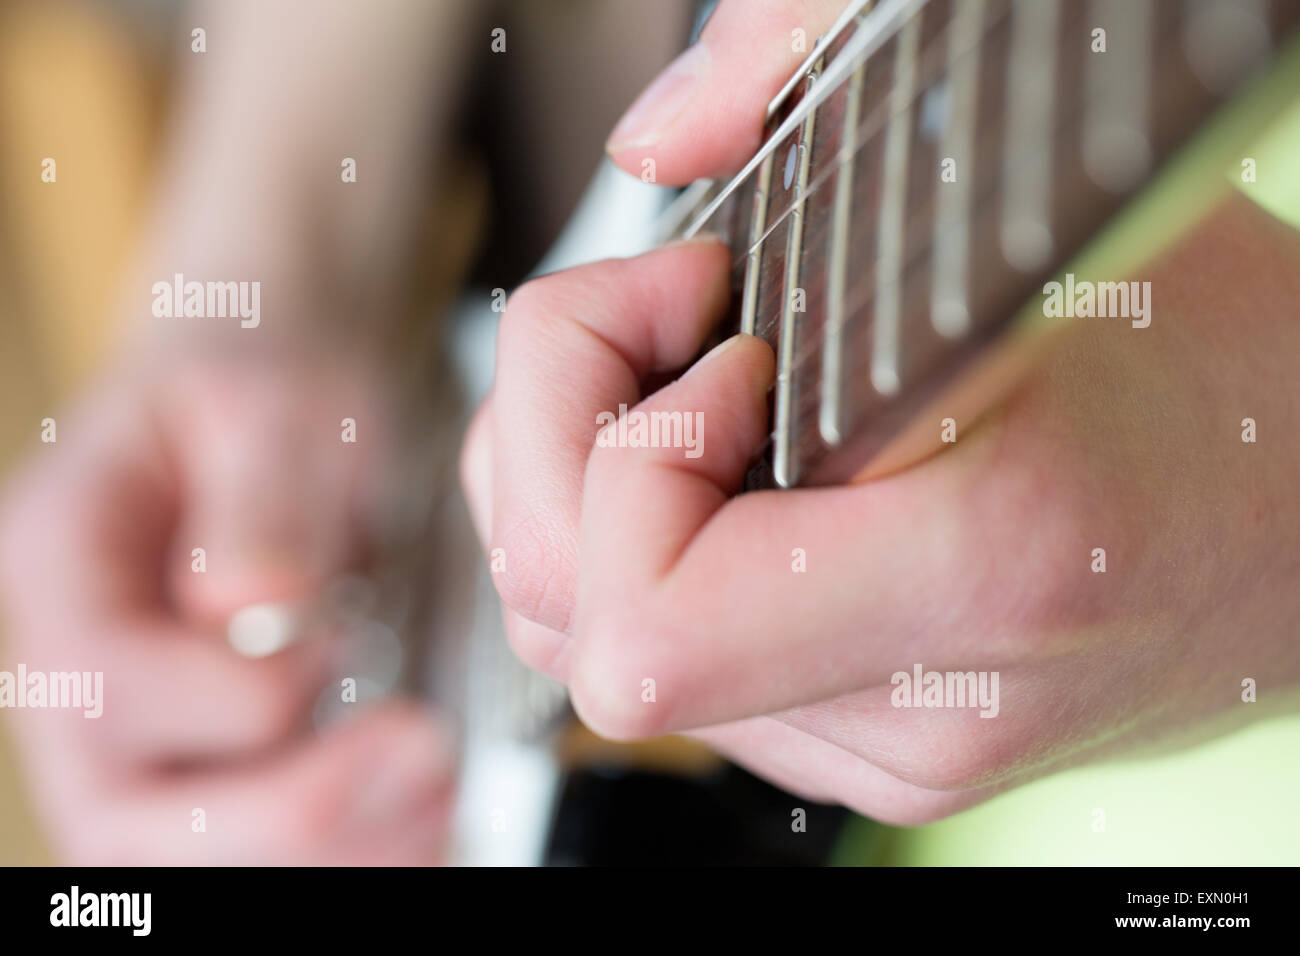 Eine Nahaufnahme von einen Akkord, der auf einer E-Gitarre Griffbrett gespielt wird. Der Gitarrist ist unscharf, kann aber nur mit einem plektrum gesehen werden. Stockfoto